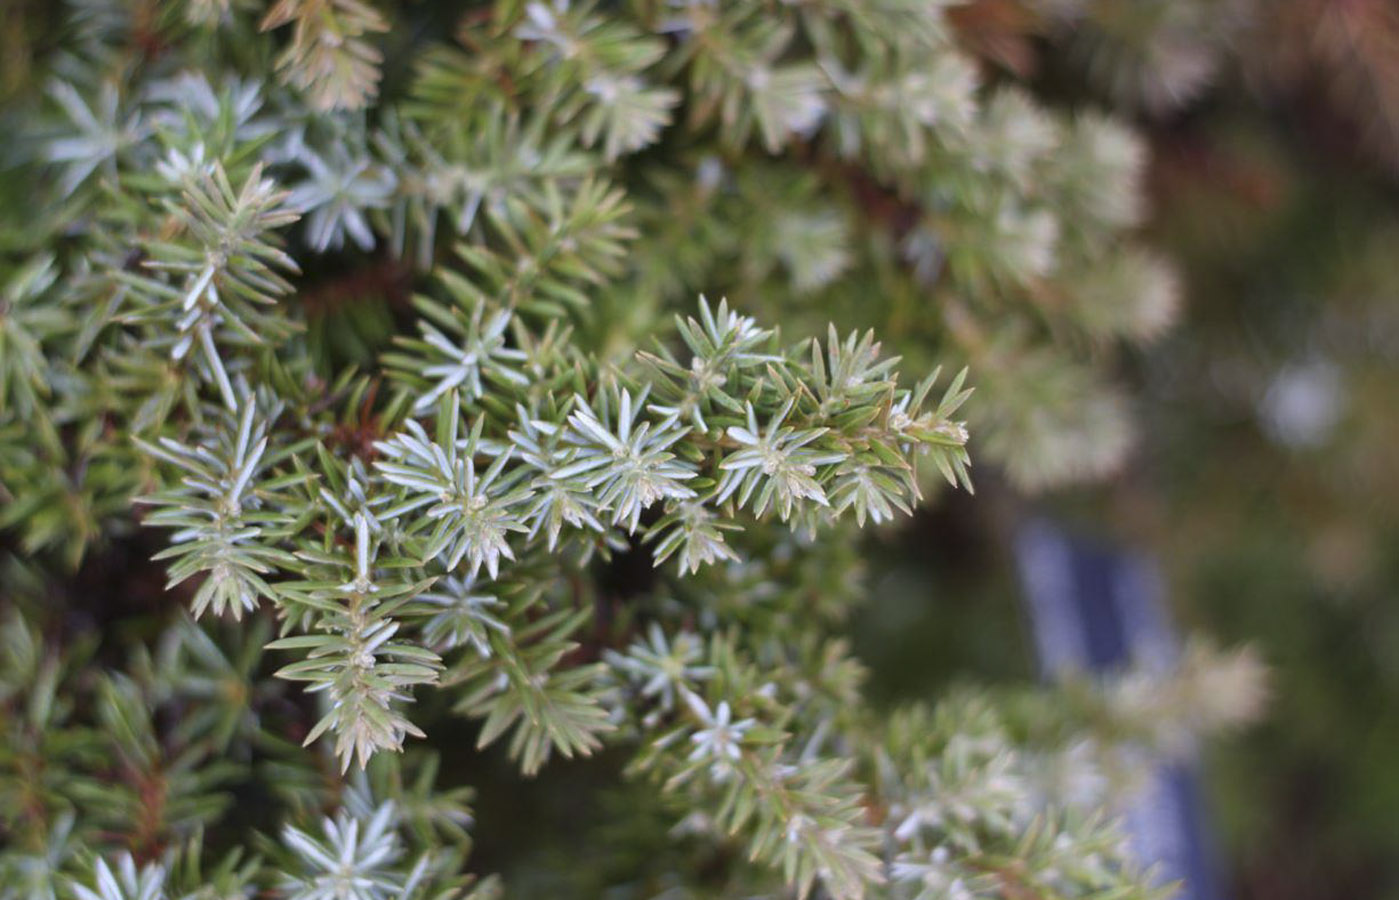 Juniperus conferta 'Silver Mist' (Silver Mist Shore Juniper)